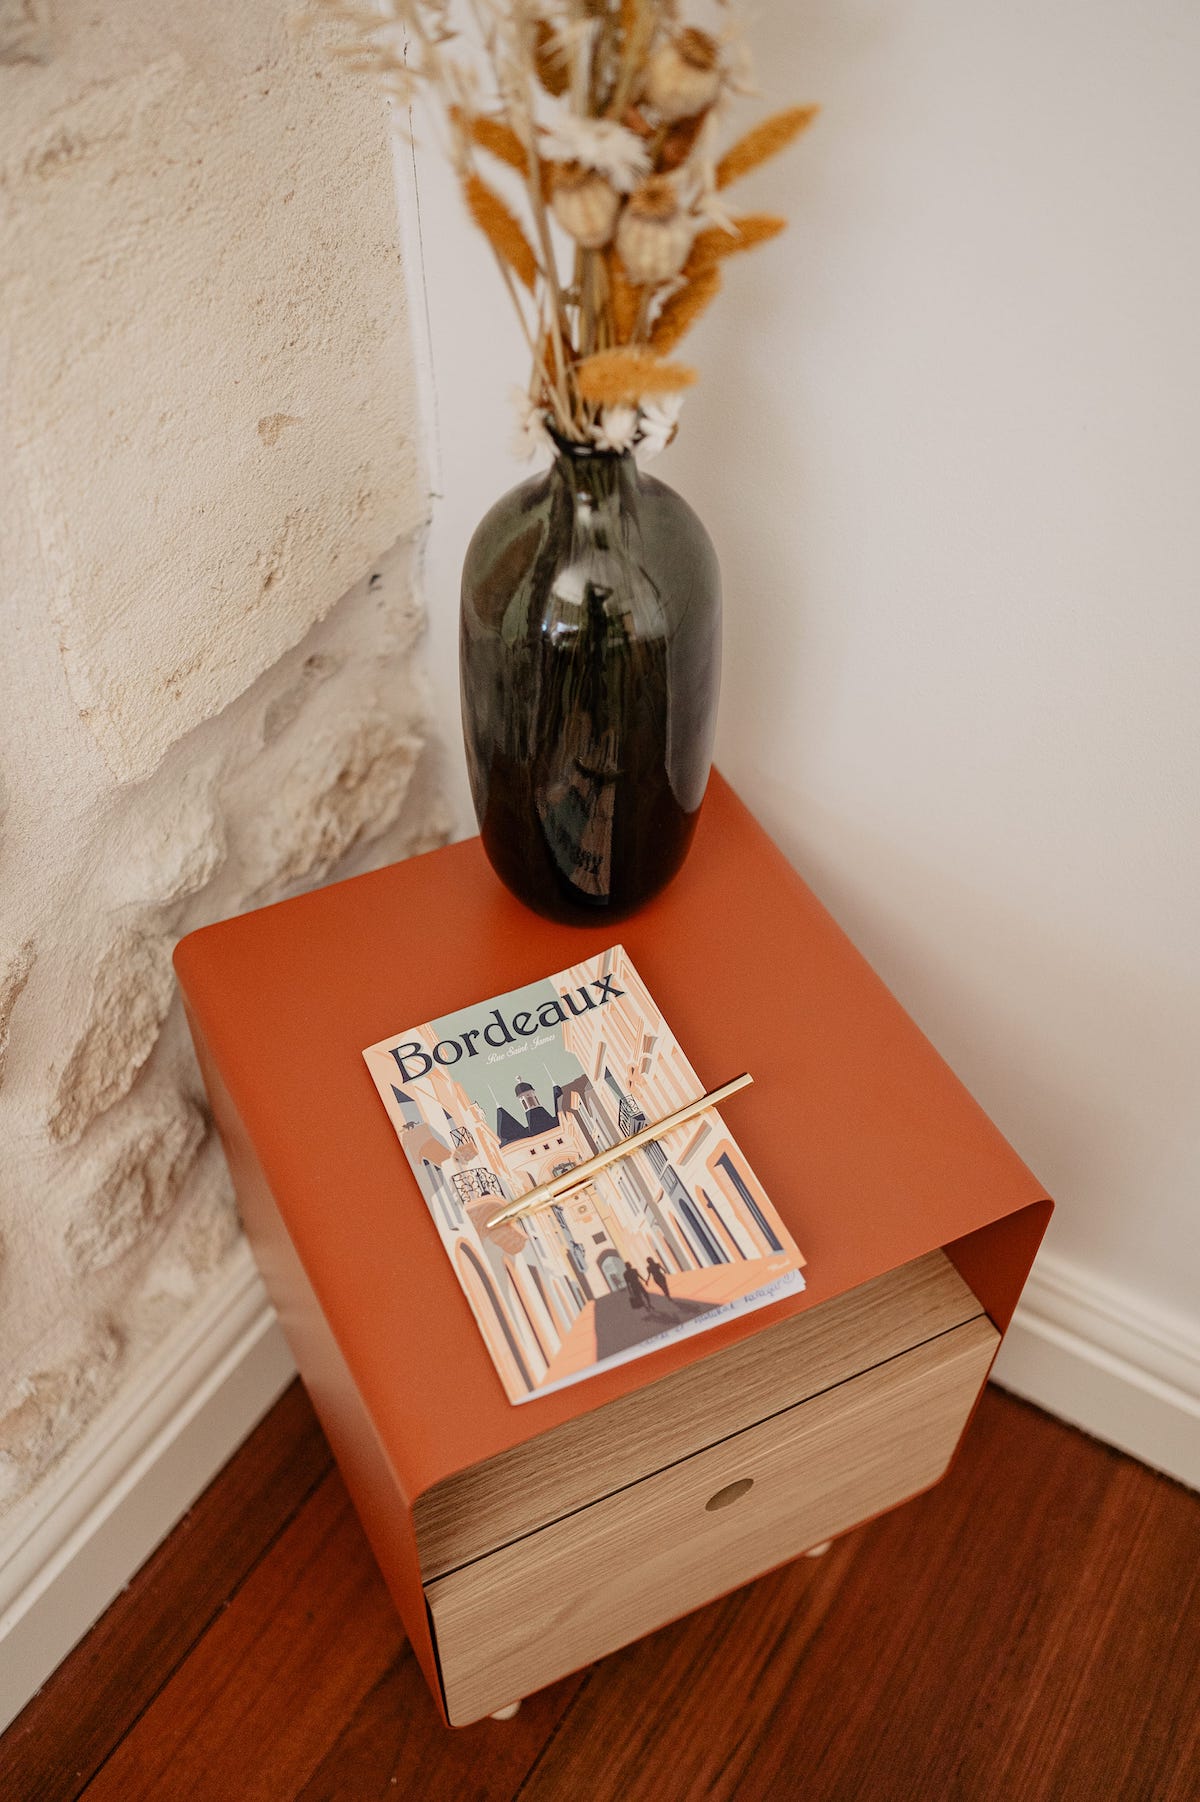 Table de chevet orange et livre sur bordeaux suite saint james chateau grand arnaud